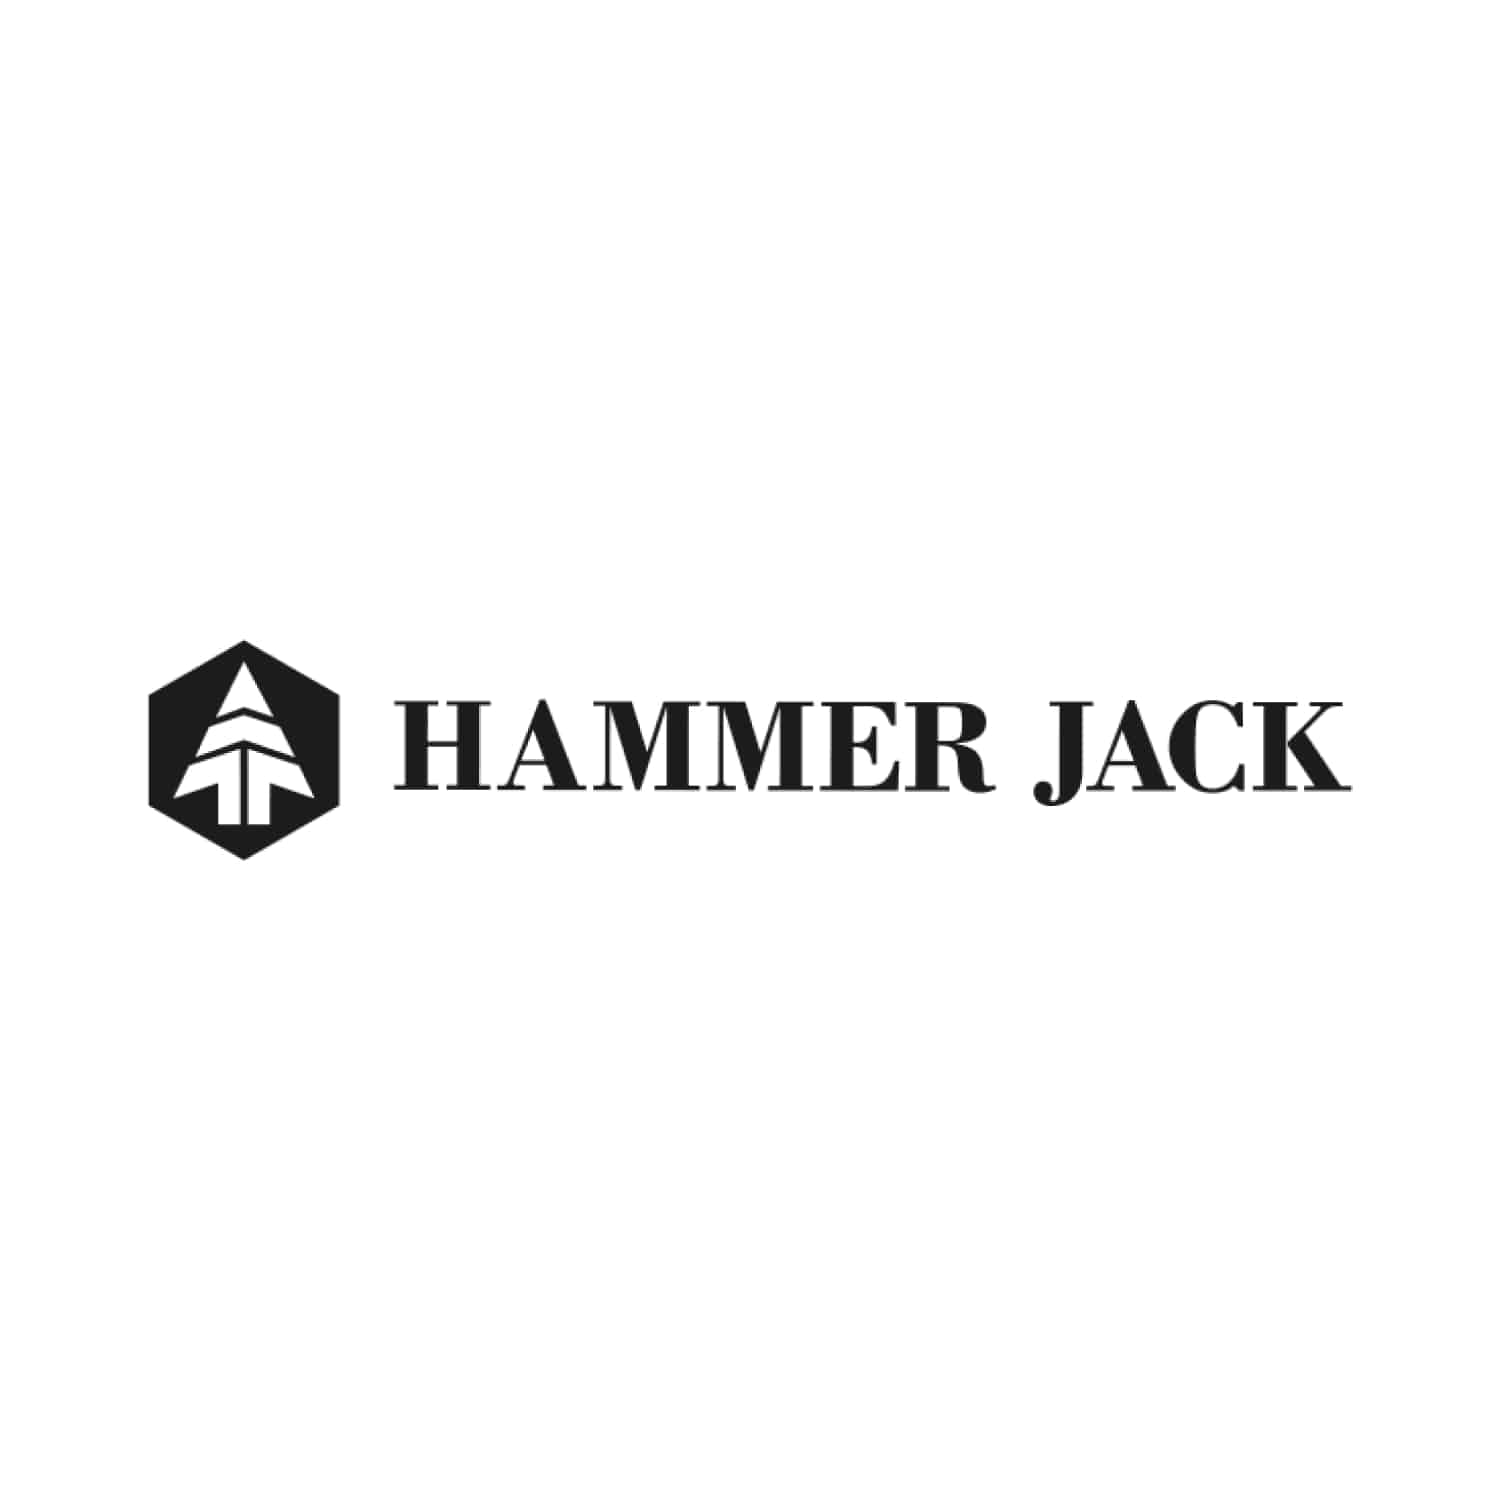 Hammerjack İndirim Kampanyası